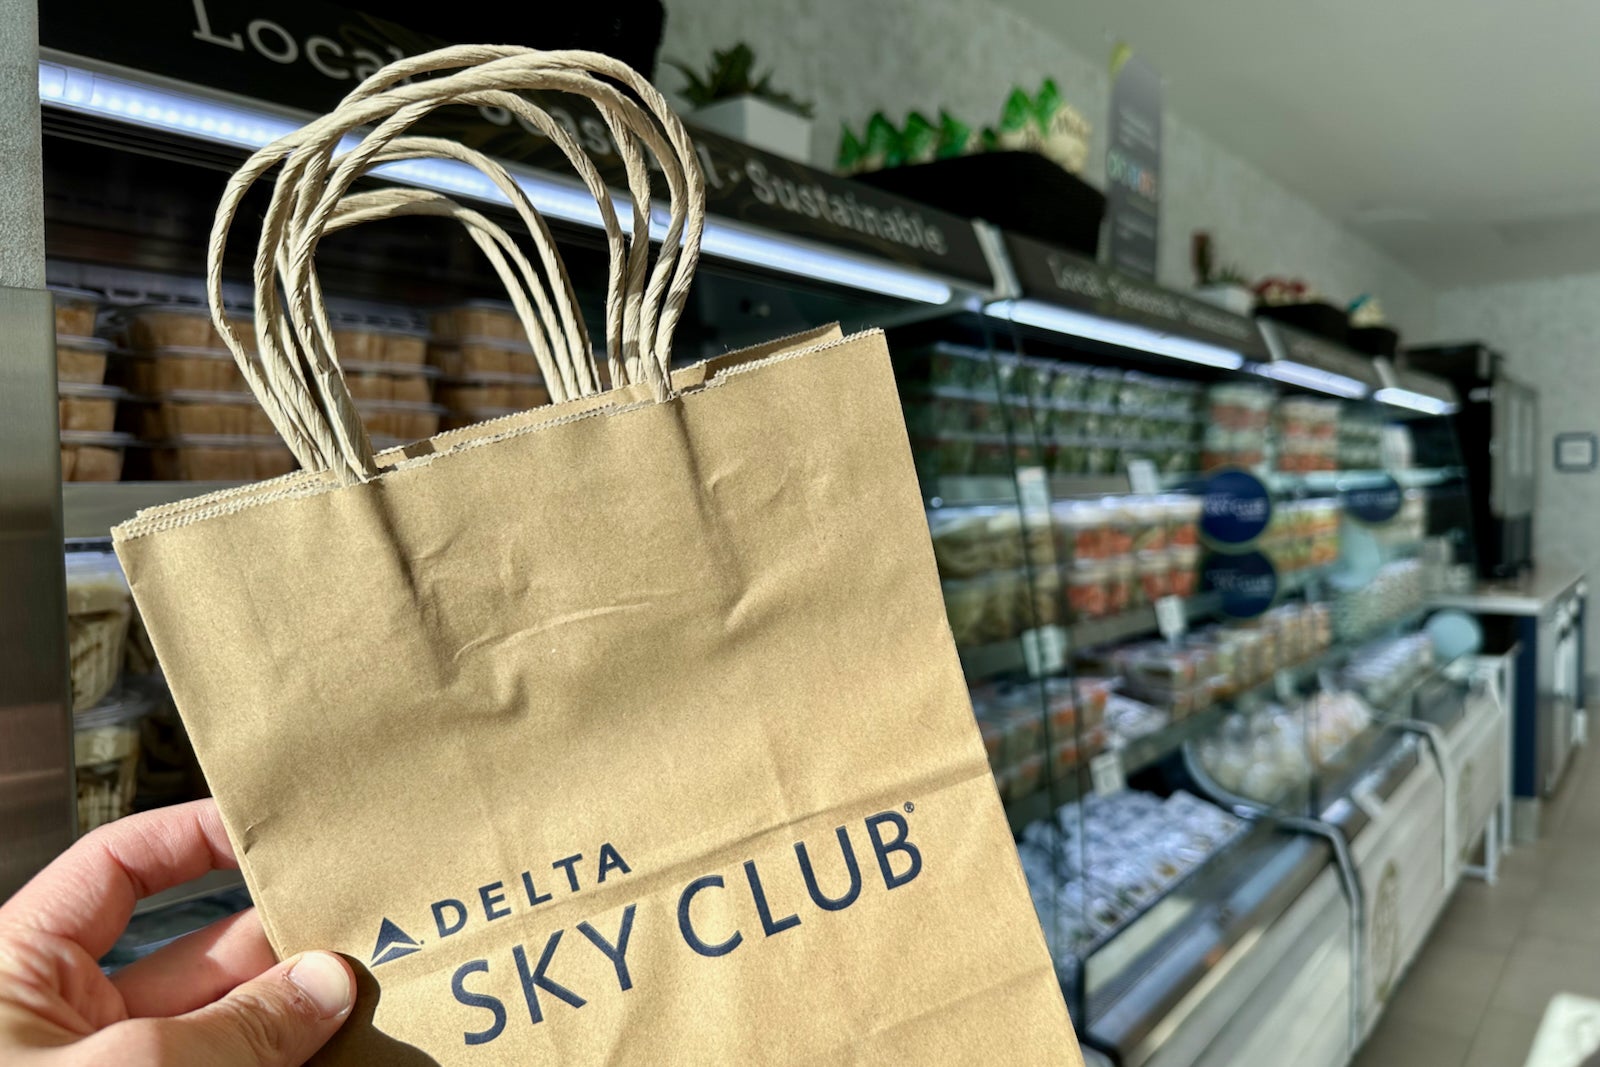 delta sky club bag